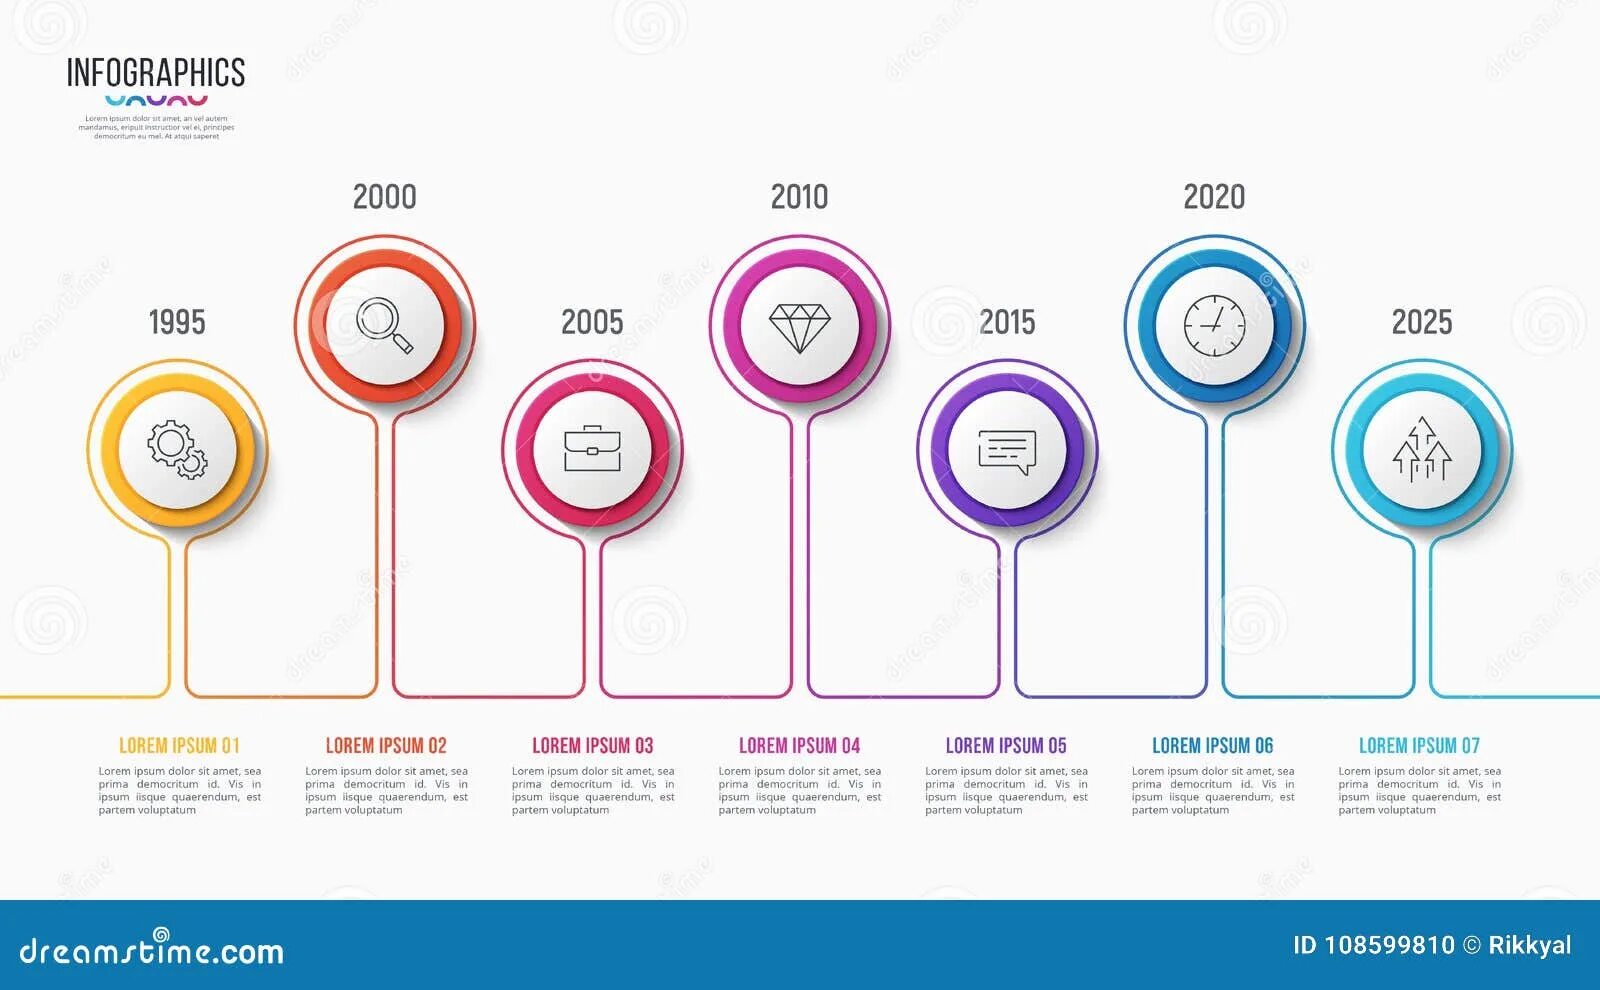 Steps line. Инфографика дизайн примеры сравнение. Инфографика график развития компании. 6 Steps infographic. Timeline Design.